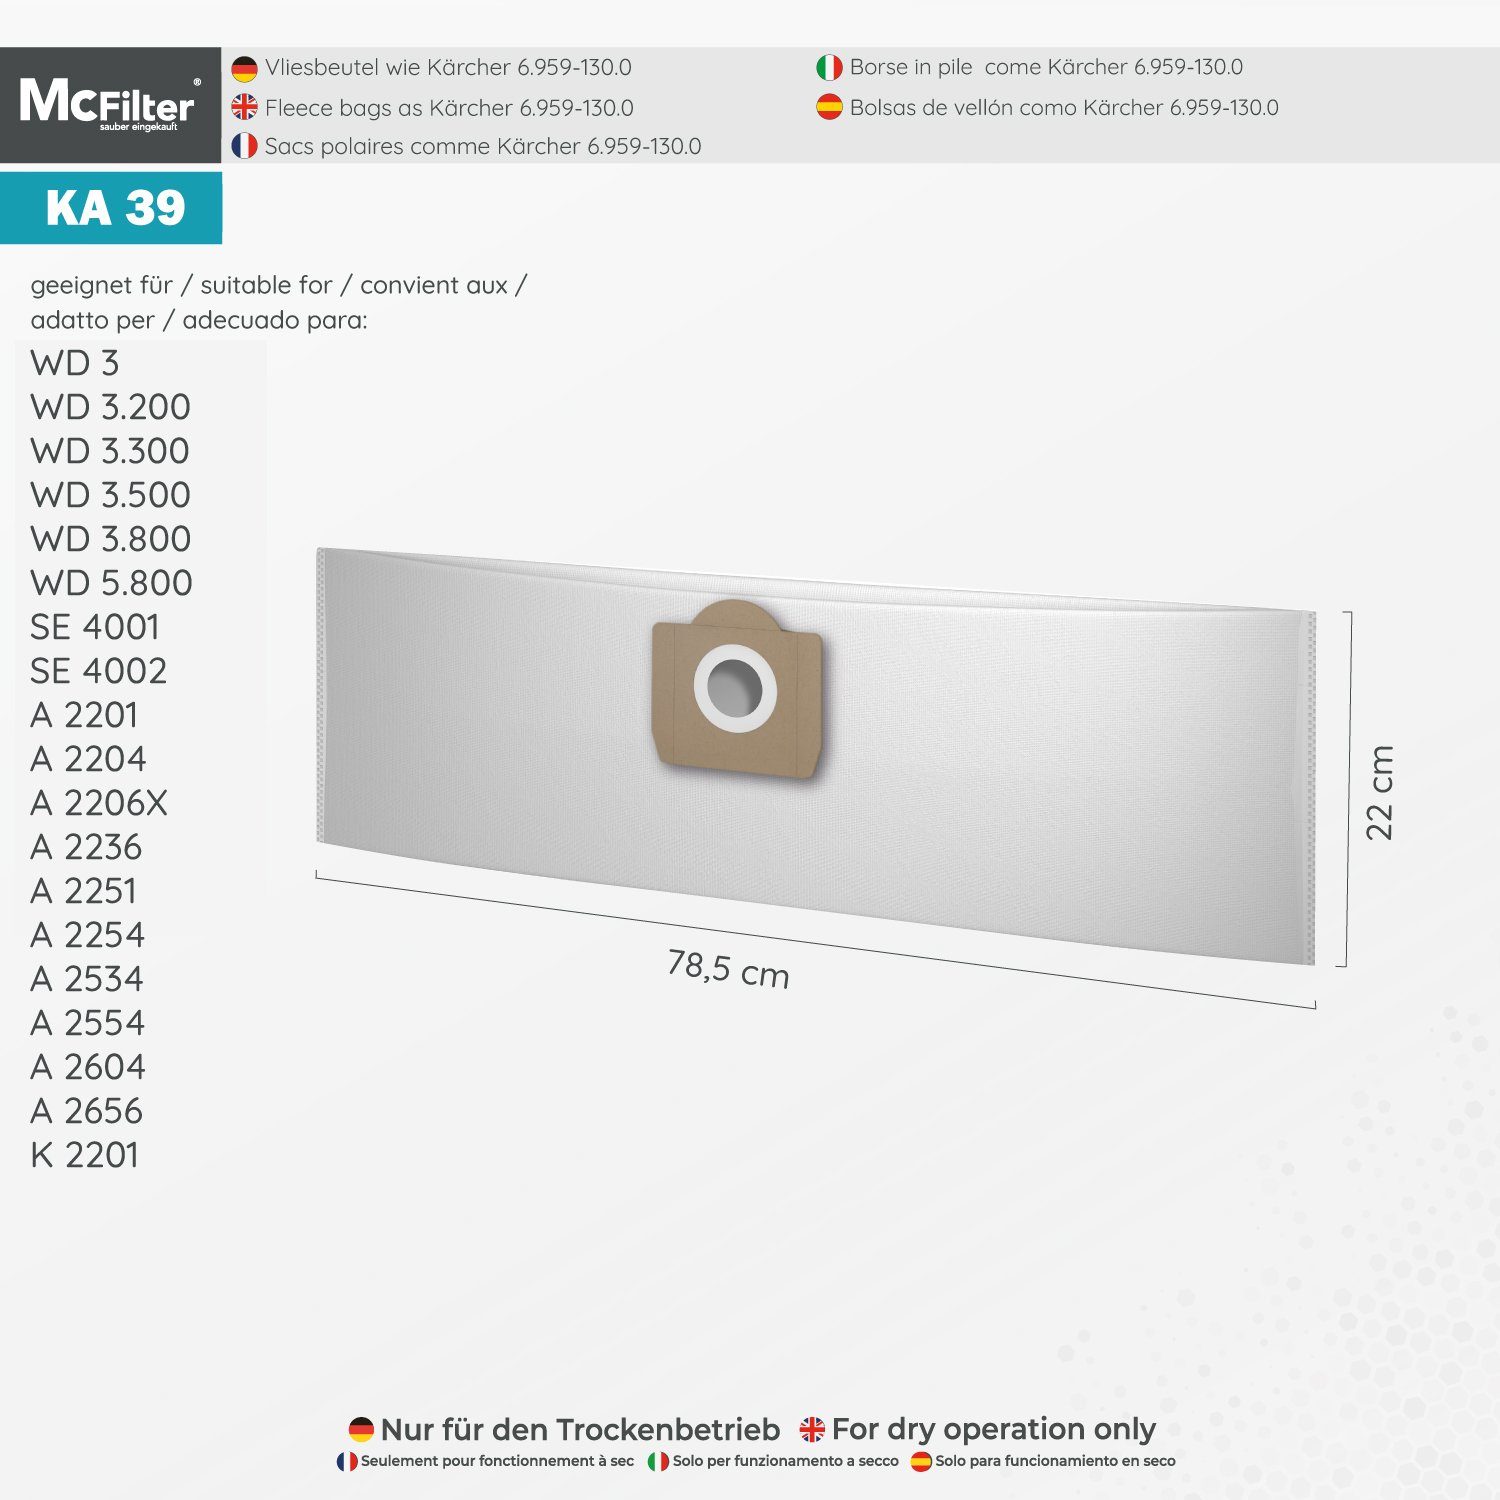 22 MV3 für passend Fireplace Stück) für St., Staubsaugerbeutel Kit (20 (Patronenfilter) 2 6.959-130.0 geeignet McFilter Staubsauger, 6.414-552.0 für (Beutel), Kärcher 3 MV Filter, Alternative +